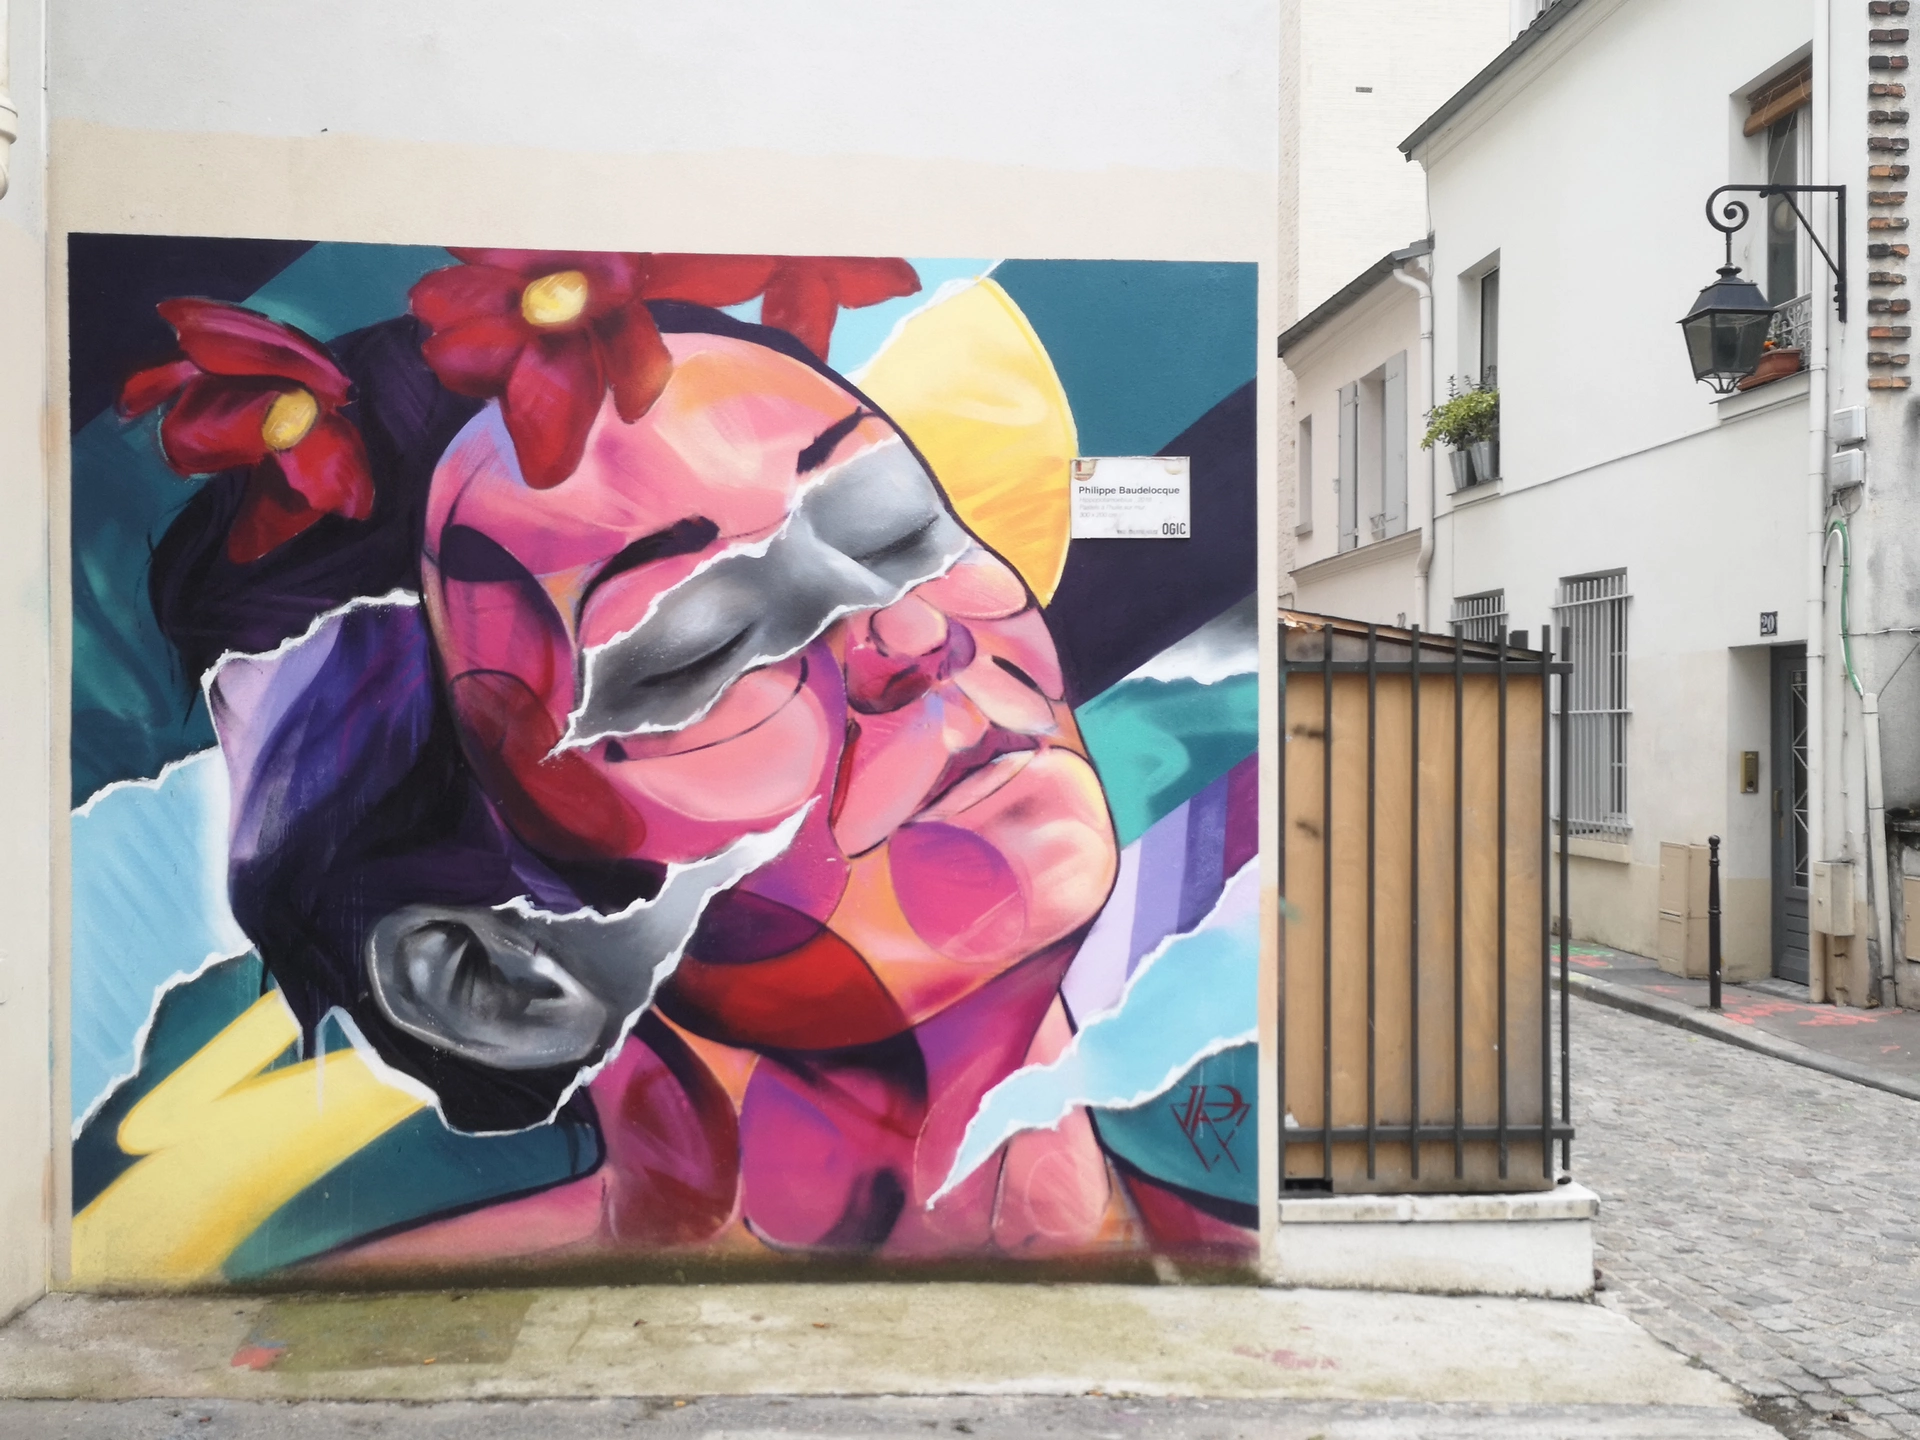 Oeuvre de Street Art réalisée par Ensemble Réel à Paris